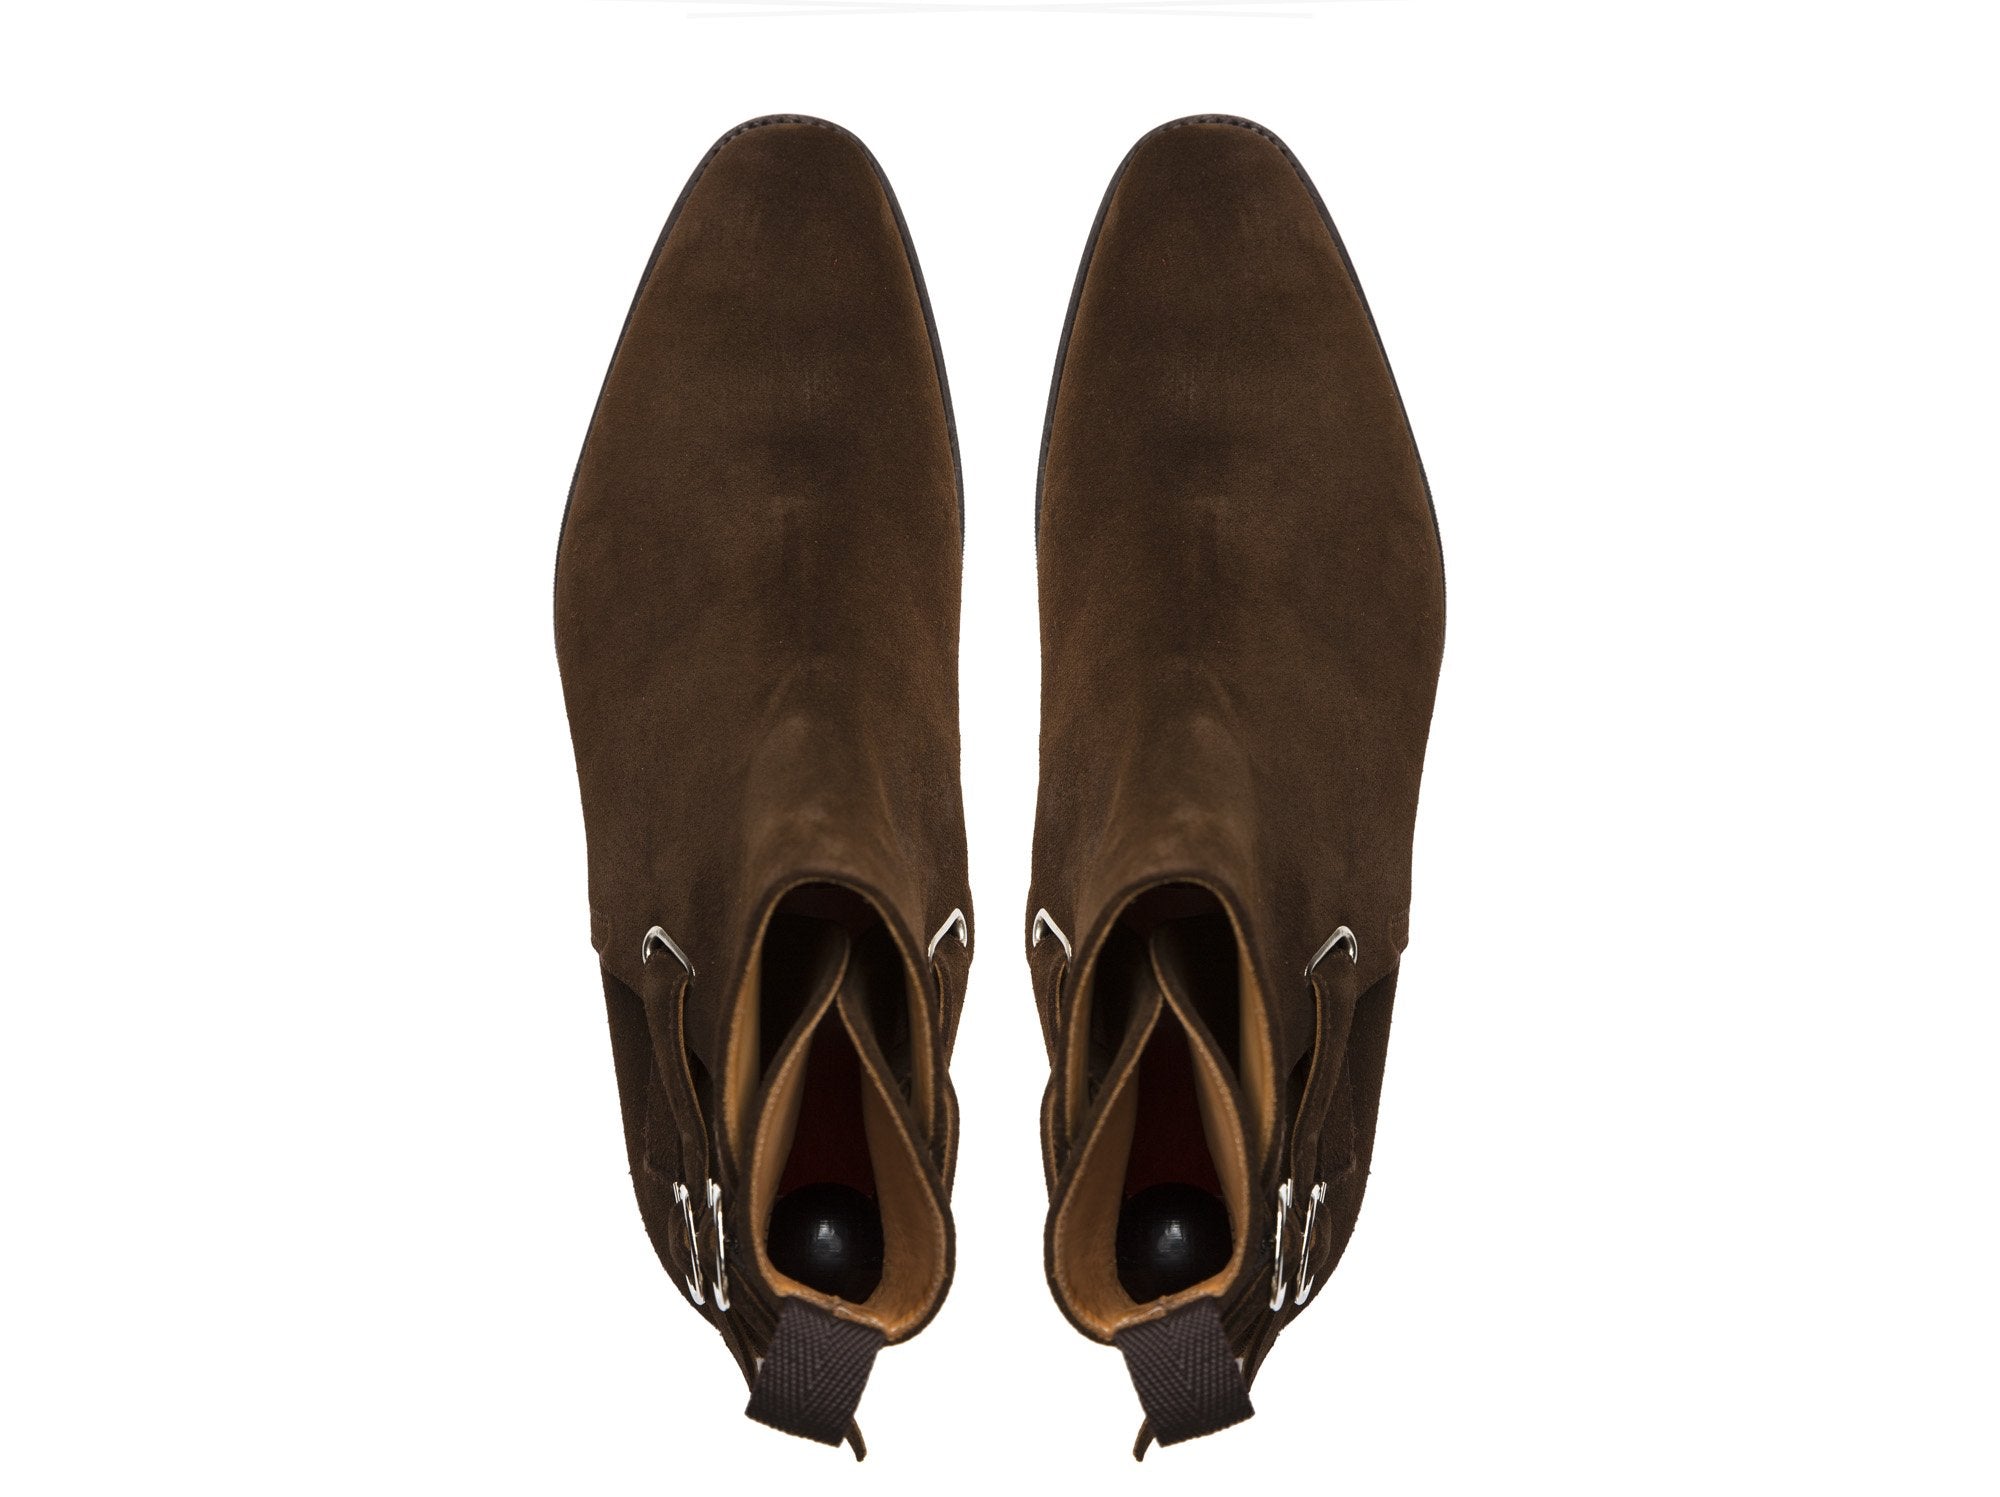 J.FitzPatrick Footwear - Genesee - Dark Brown Suede - LPB Last - City Rubber Sole